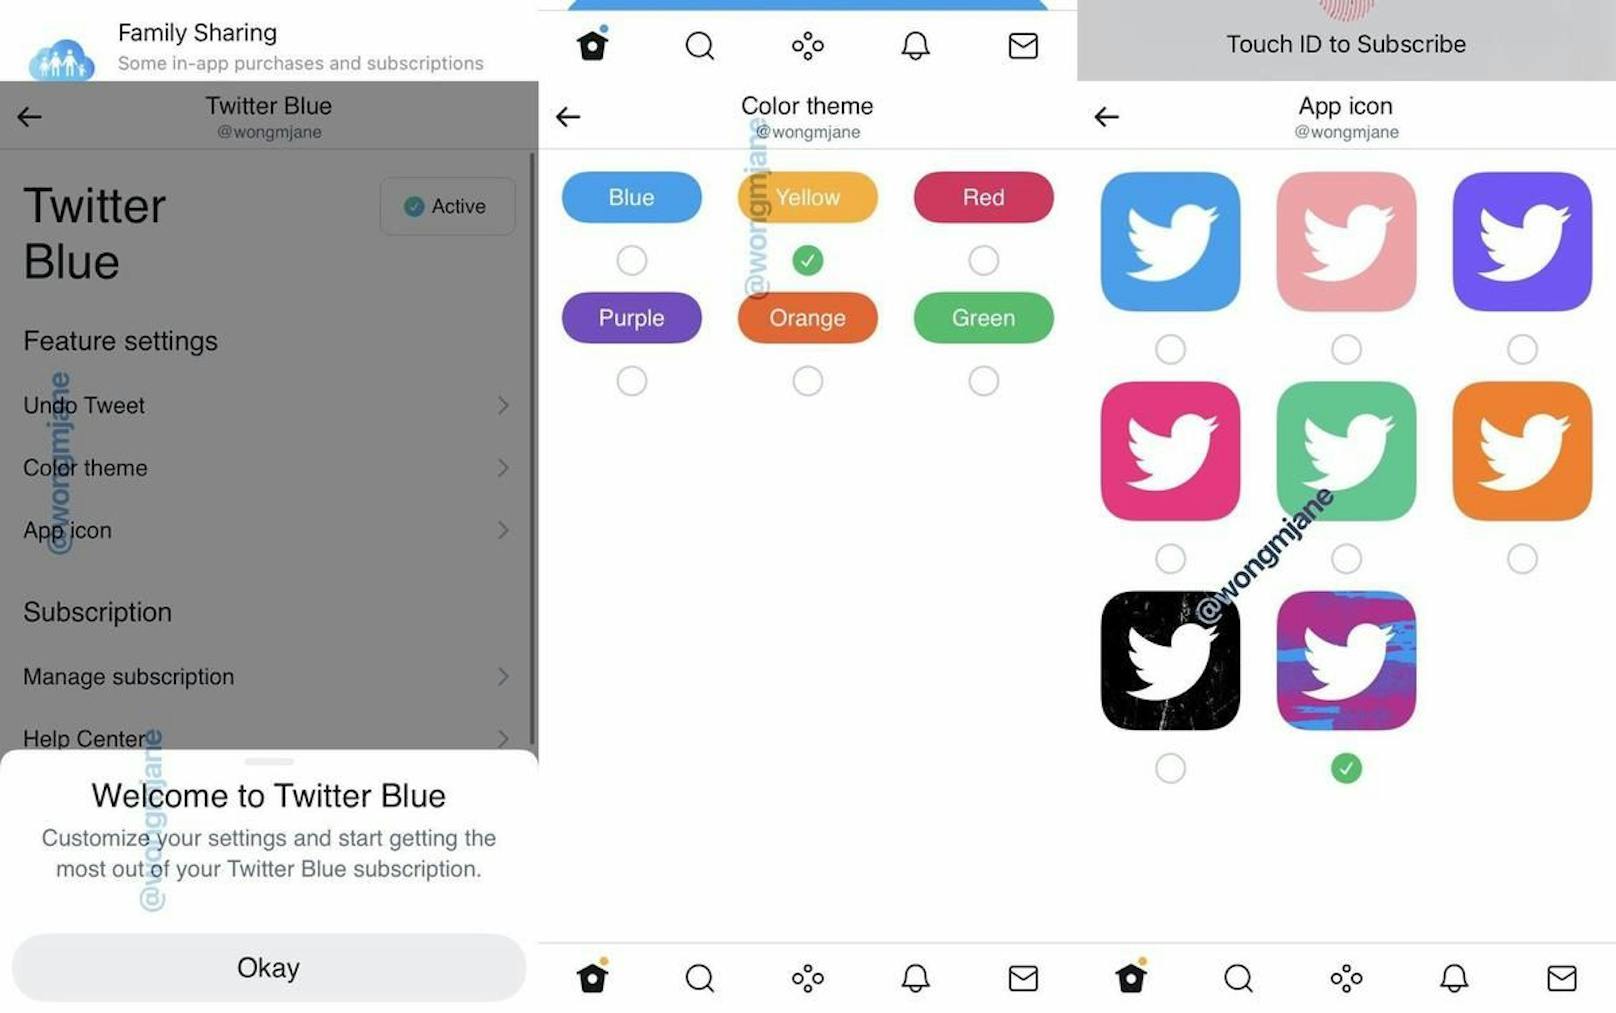 Mit Twitter Blue soll man unter anderem die Farbe des App-Icons ändern können.